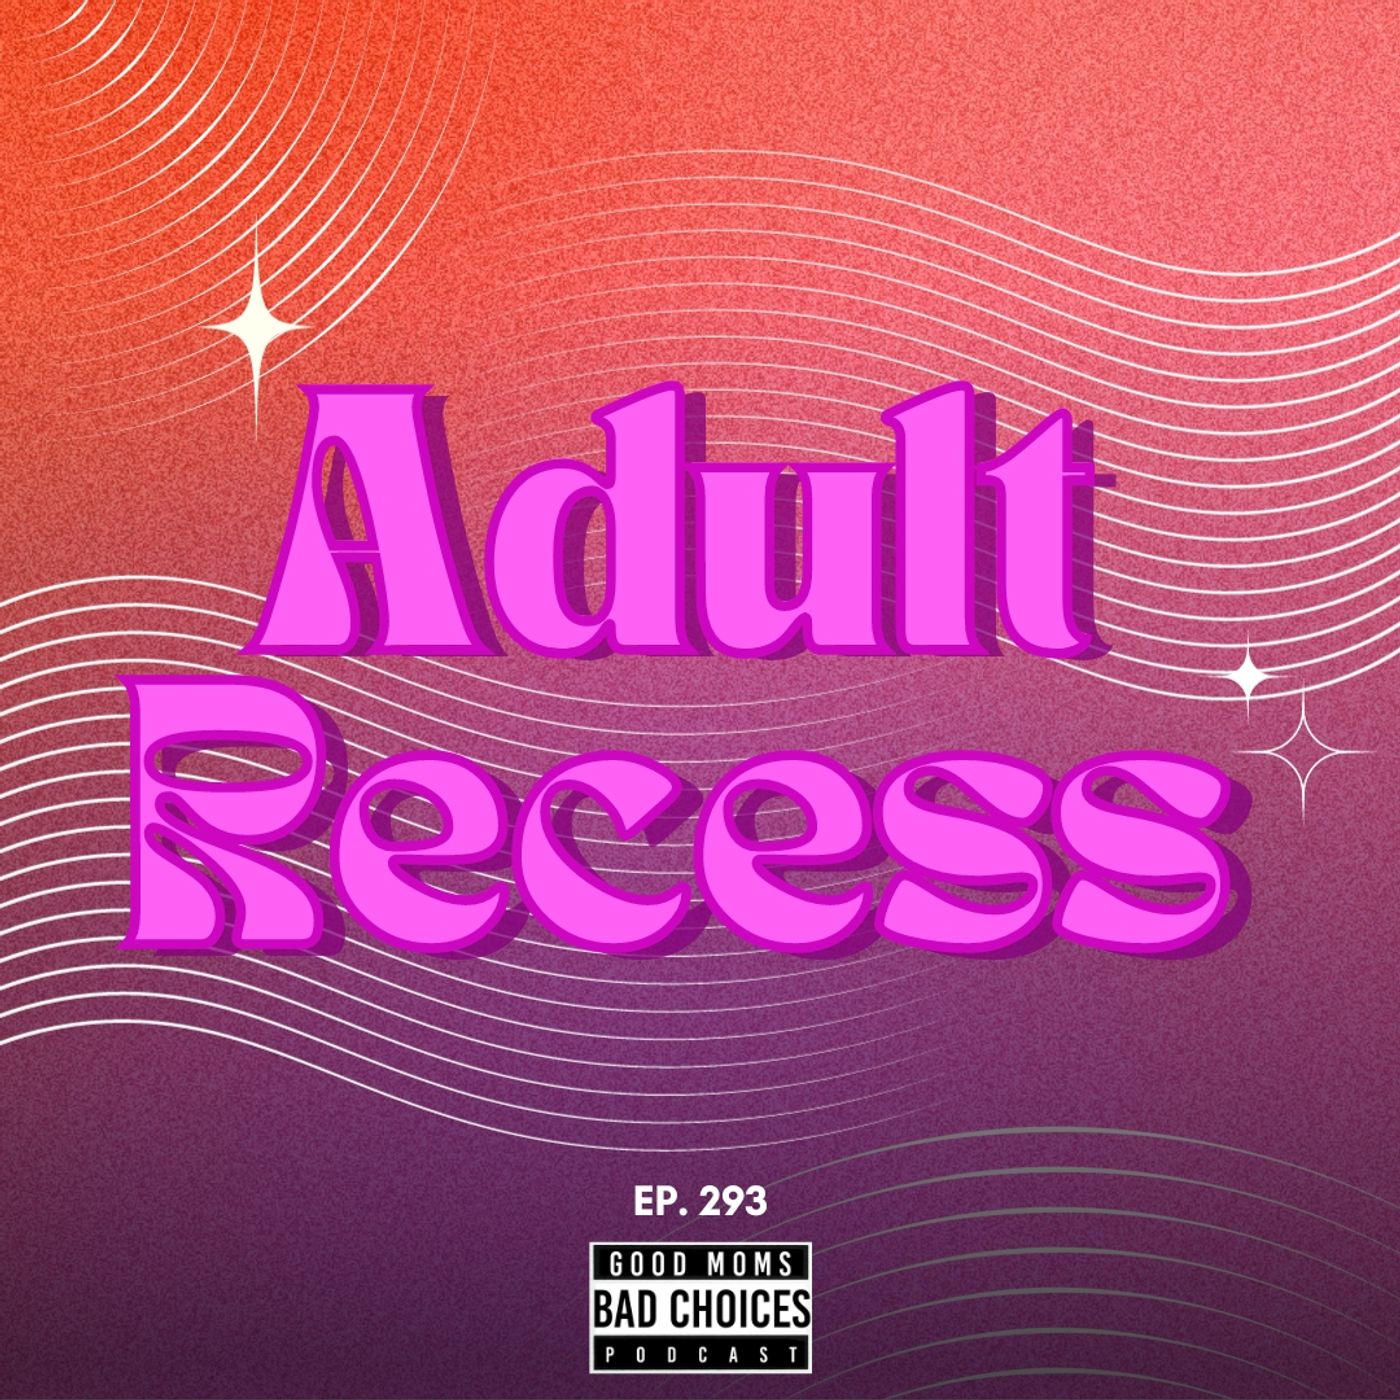 Adult Recess